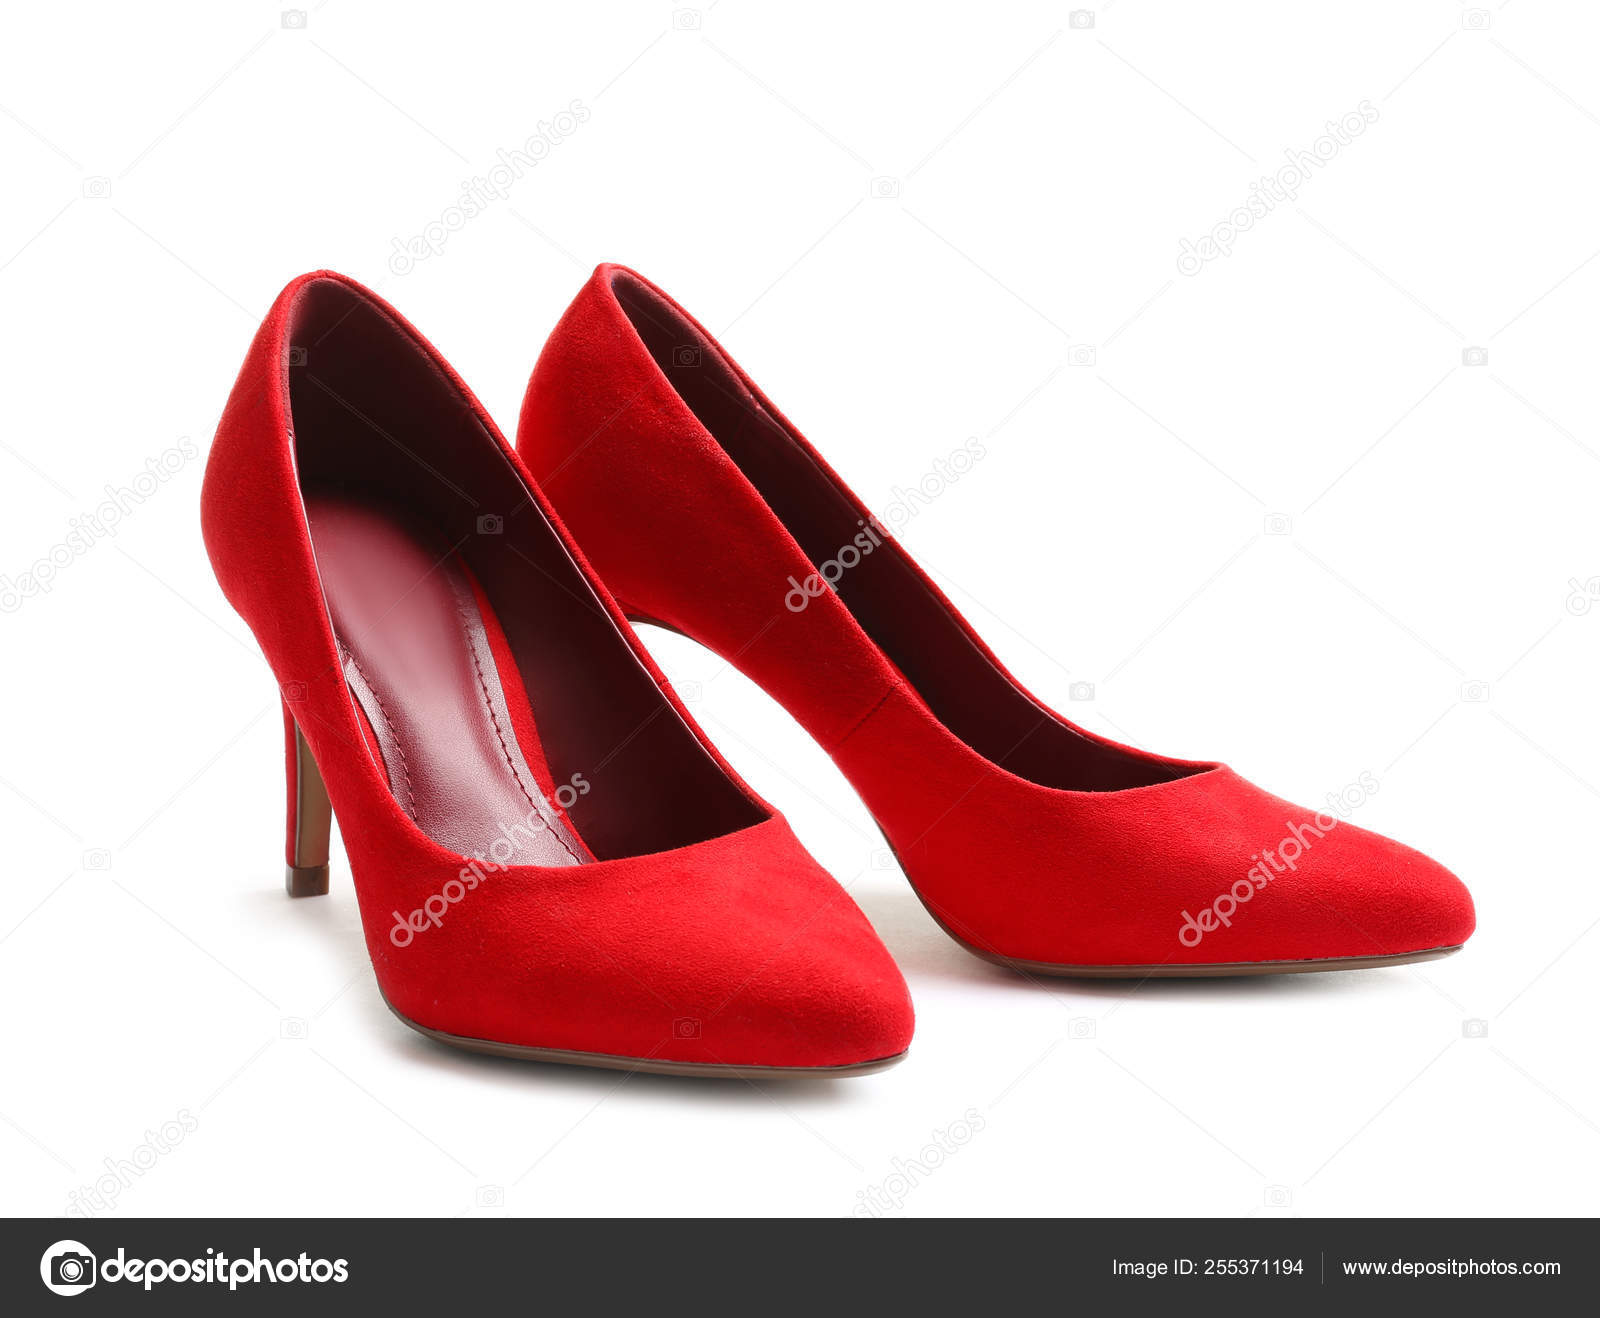 stylish high heel shoes